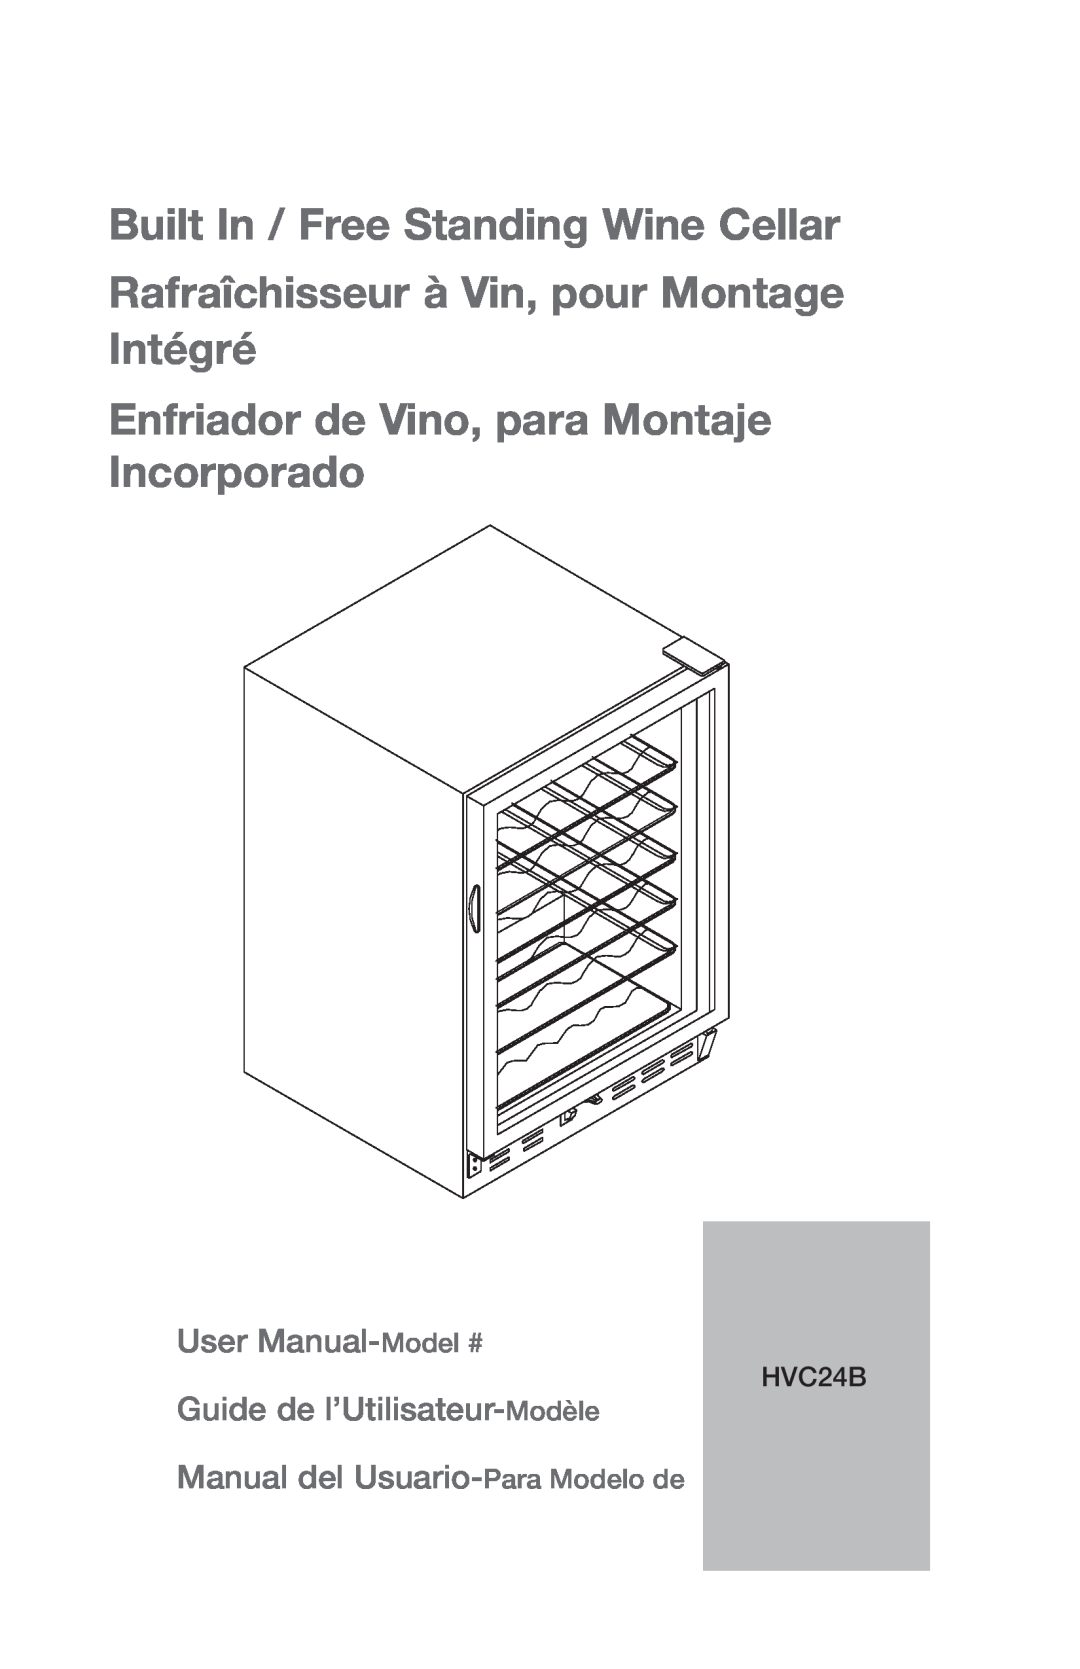 Haier HVCE24 user manual Built In / Free Standing Wine Cellar, Rafraîchisseur à Vin, pour Montage Intégré, HVC24B 